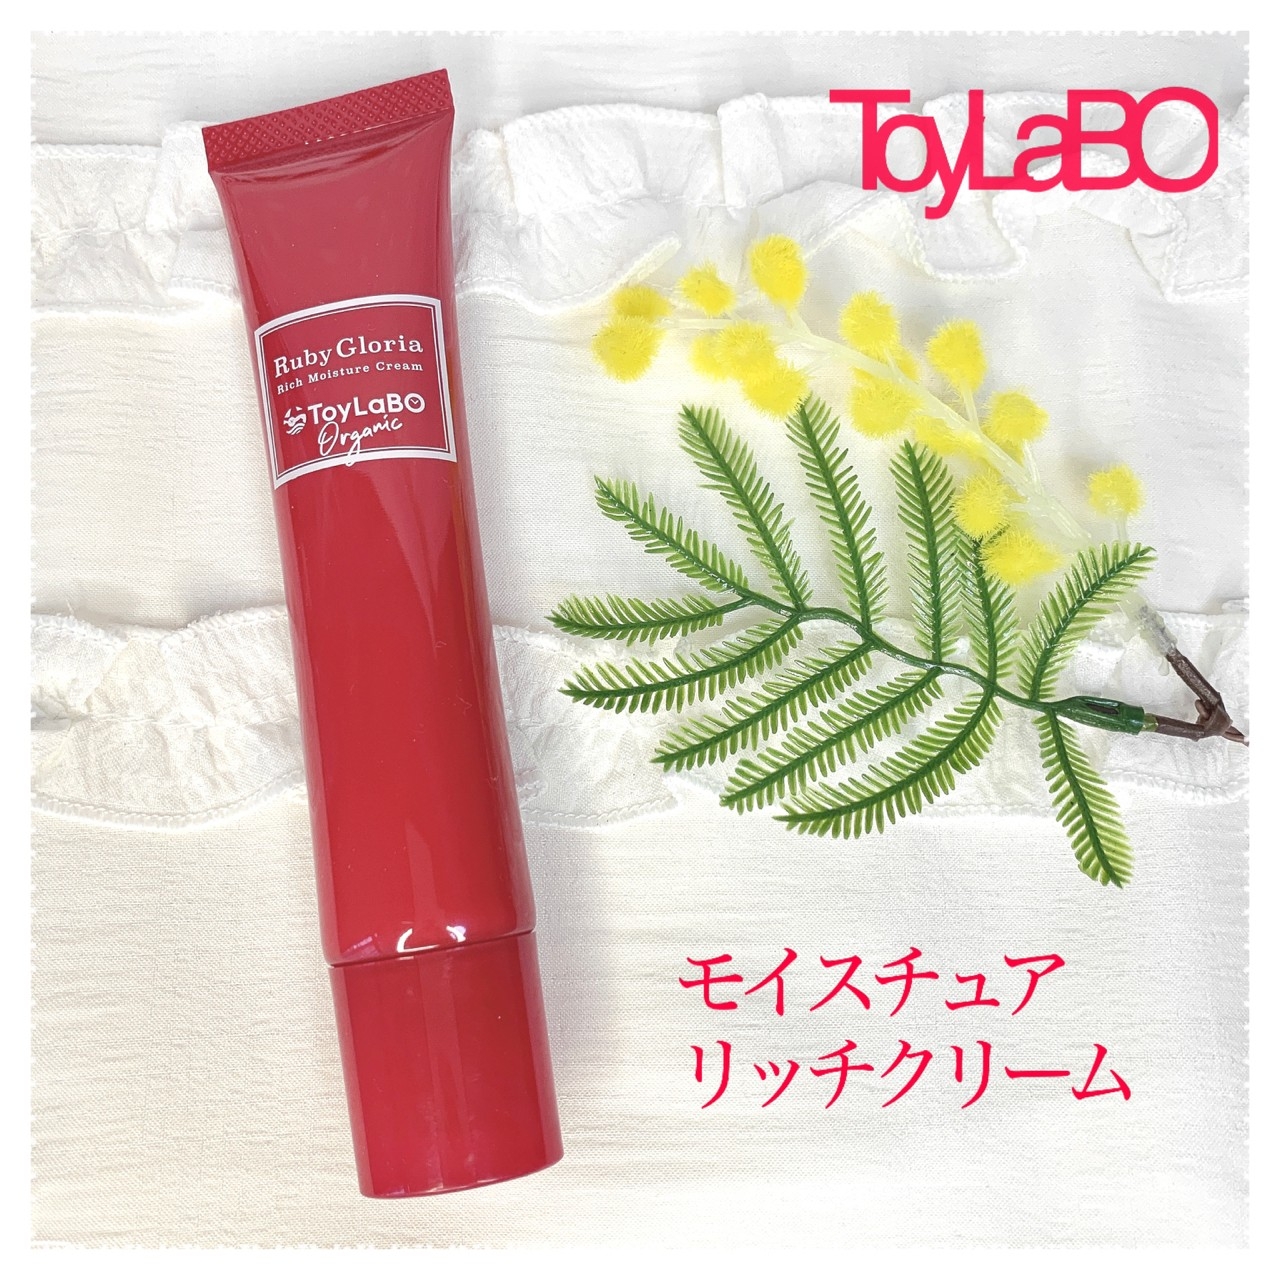 ToyLaBO(トイラボ) ルビーグロリア リッチモイスチュアクリームの良い点・メリットに関するkana_cafe_timeさんの口コミ画像1